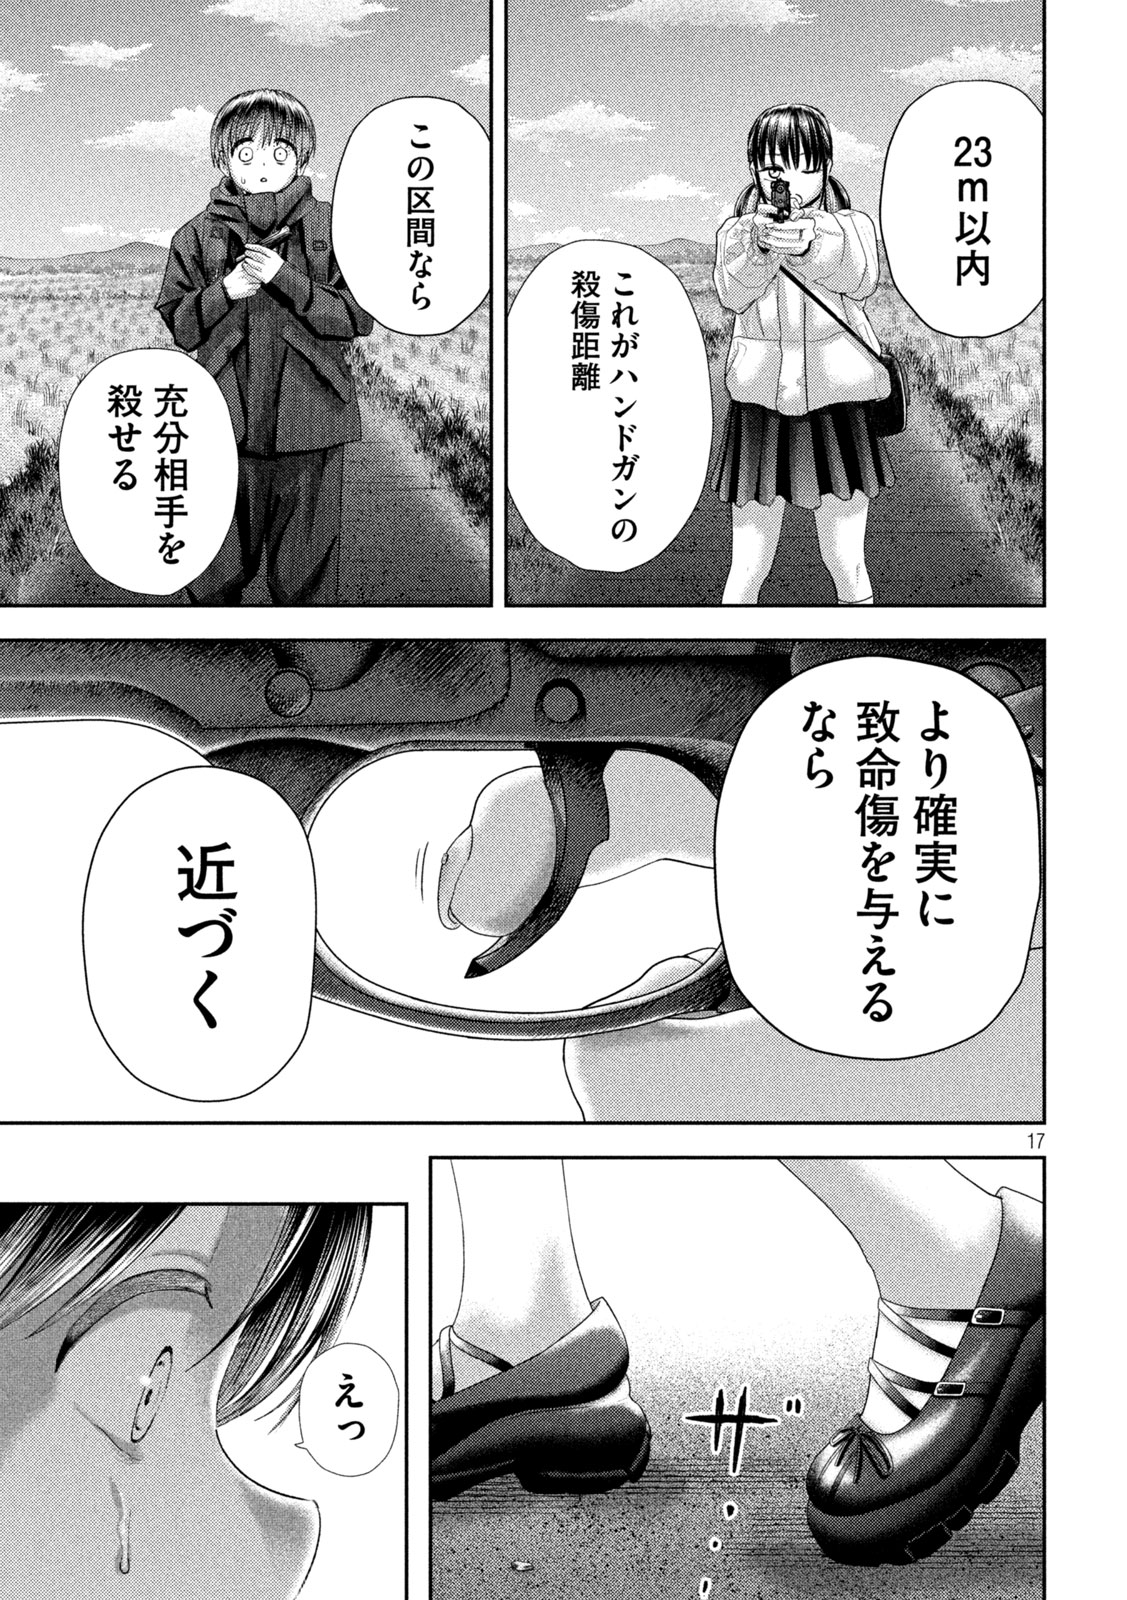 Nezumi no Koi - Chapter 31 - Page 17